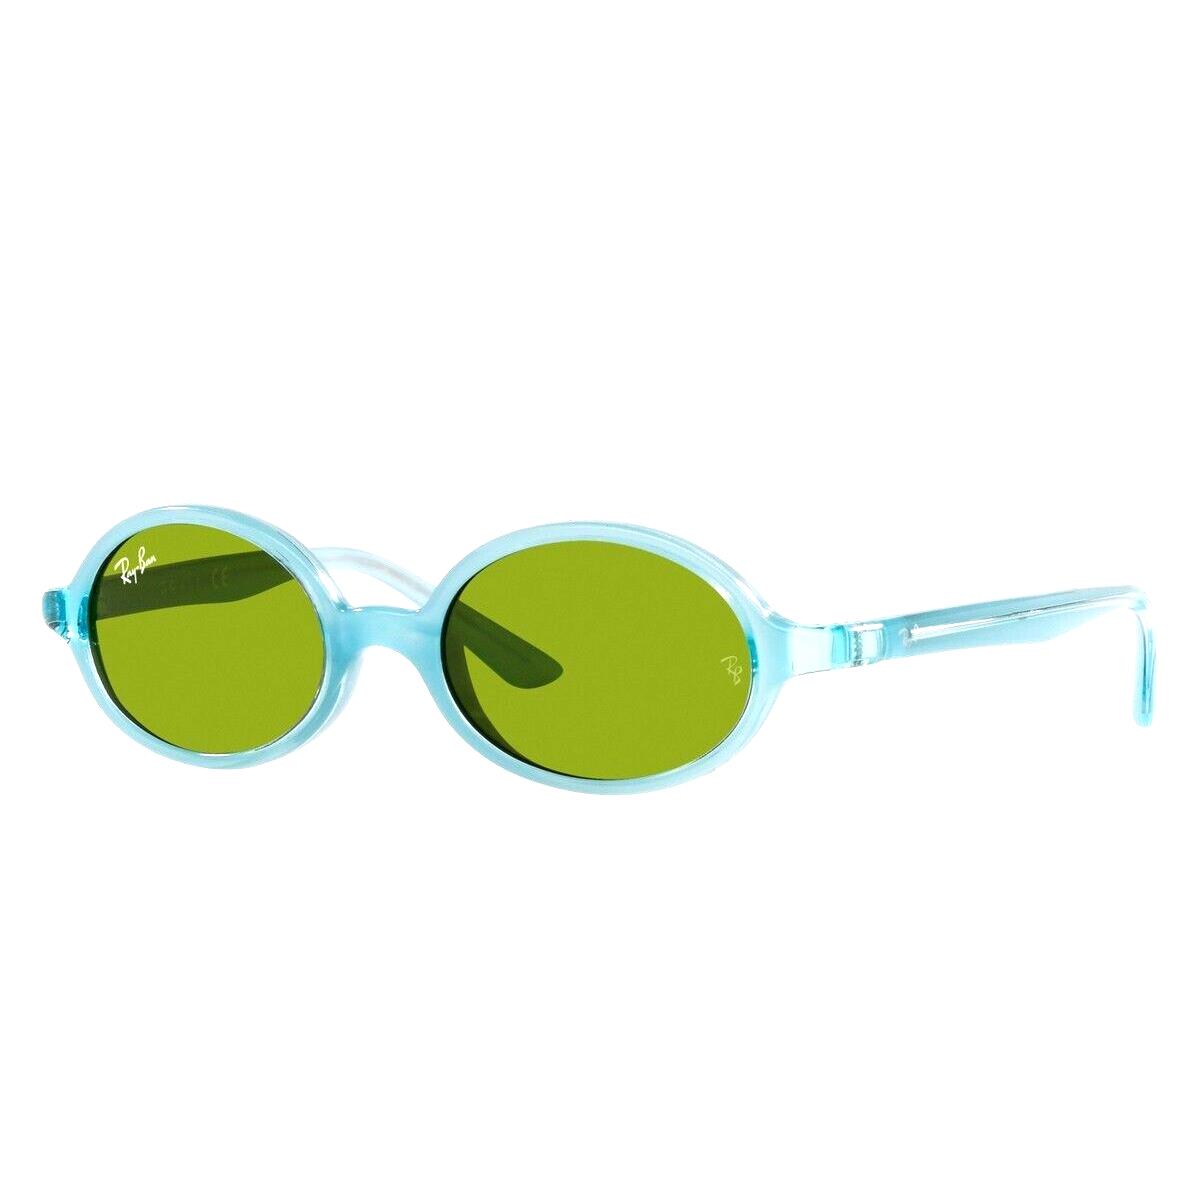 Ray Ban Kids Burbank RJ9145S 7085/2 Blue Sunglasses 42-16-115 - Frame: Blue, Lens: Green